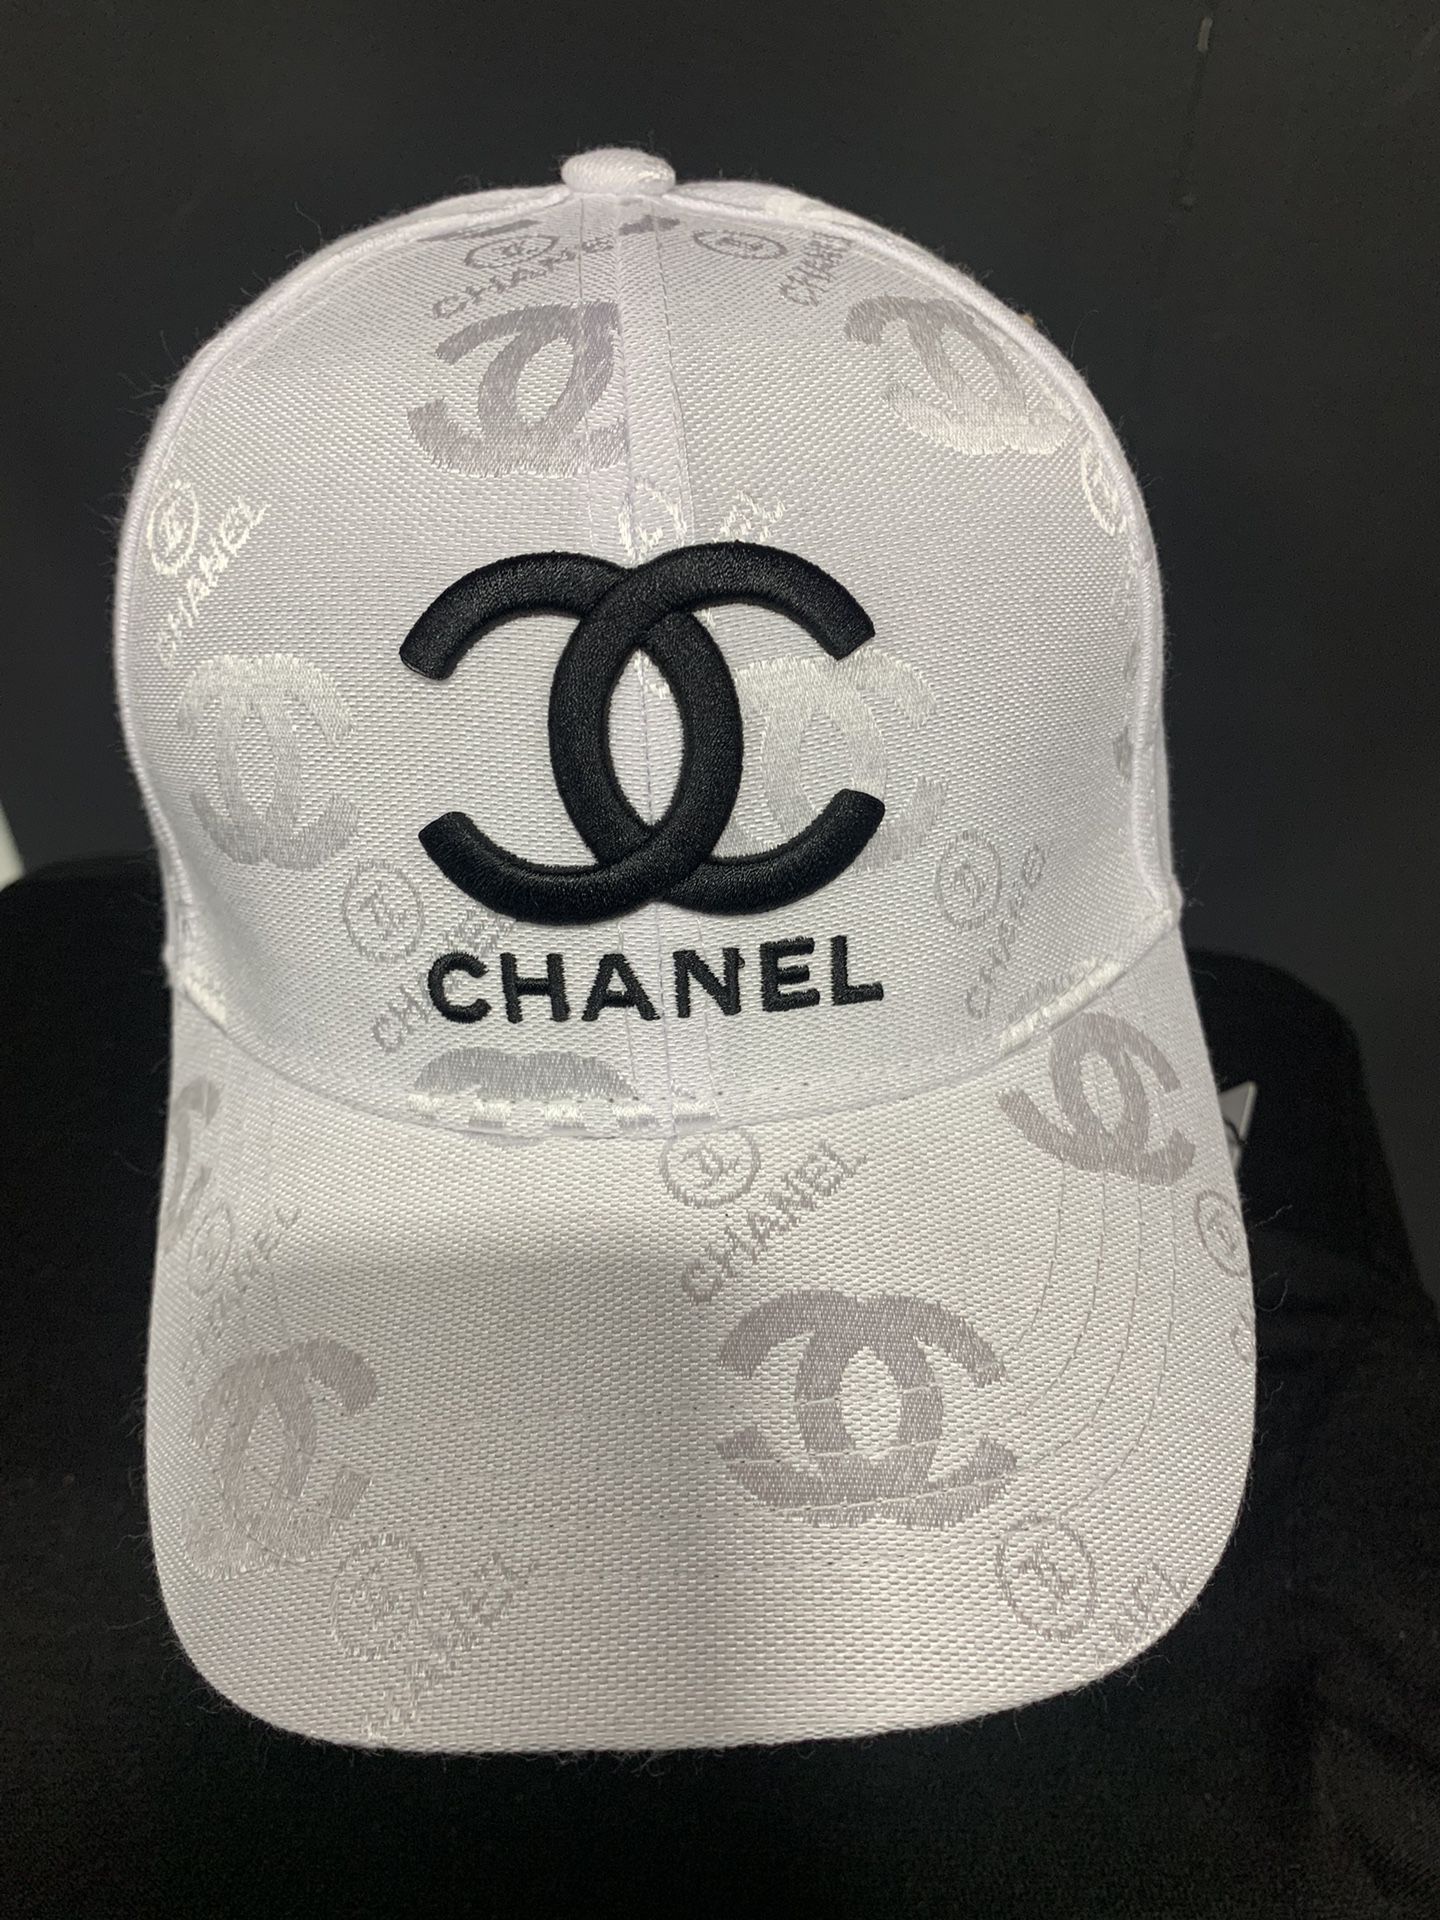 Chanel CC Cap for Sale in Miami Beach, FL - OfferUp